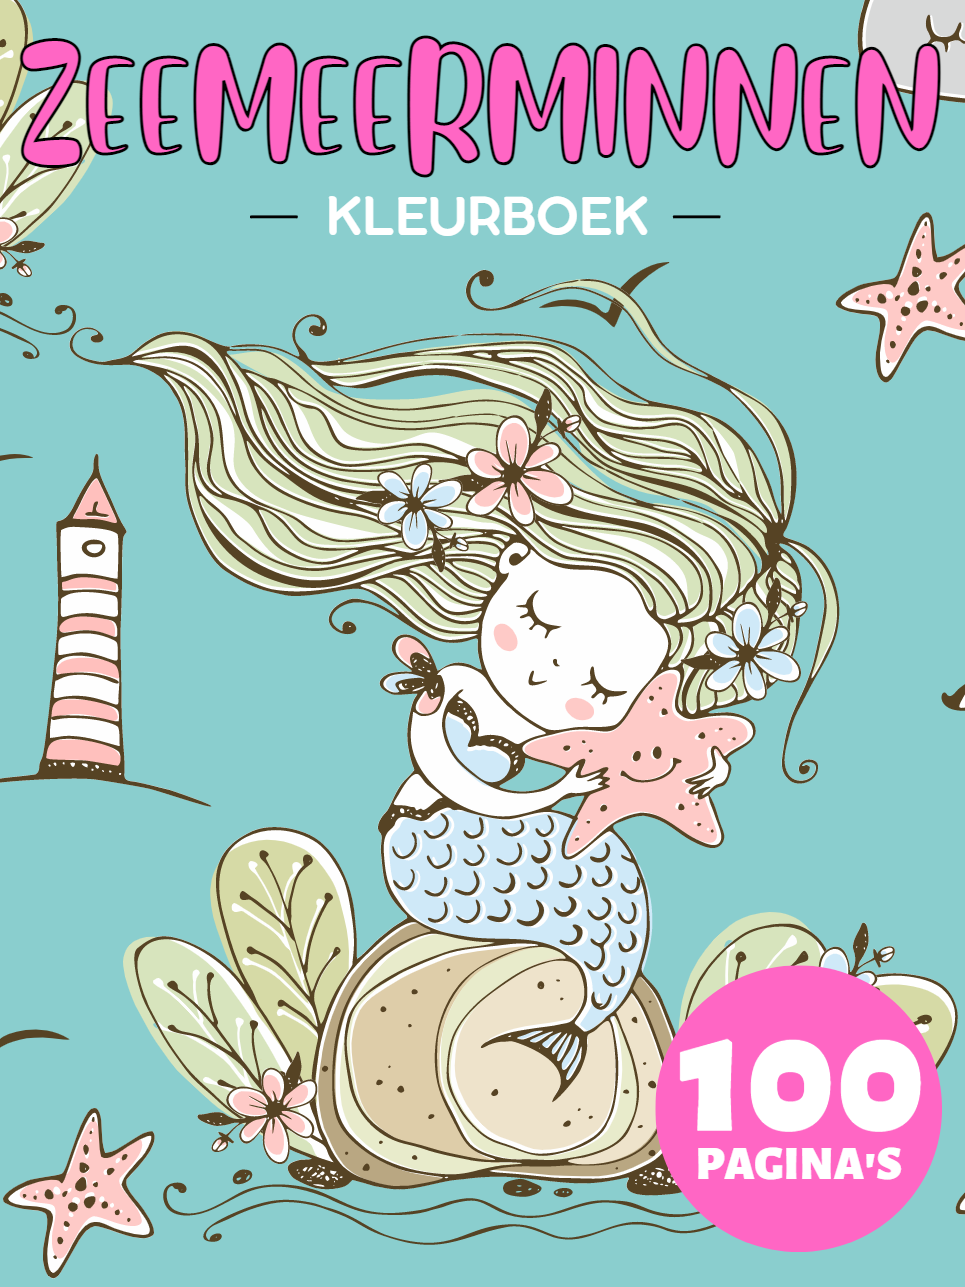 Zeemeerminnen Kleurboek voor Kinderen